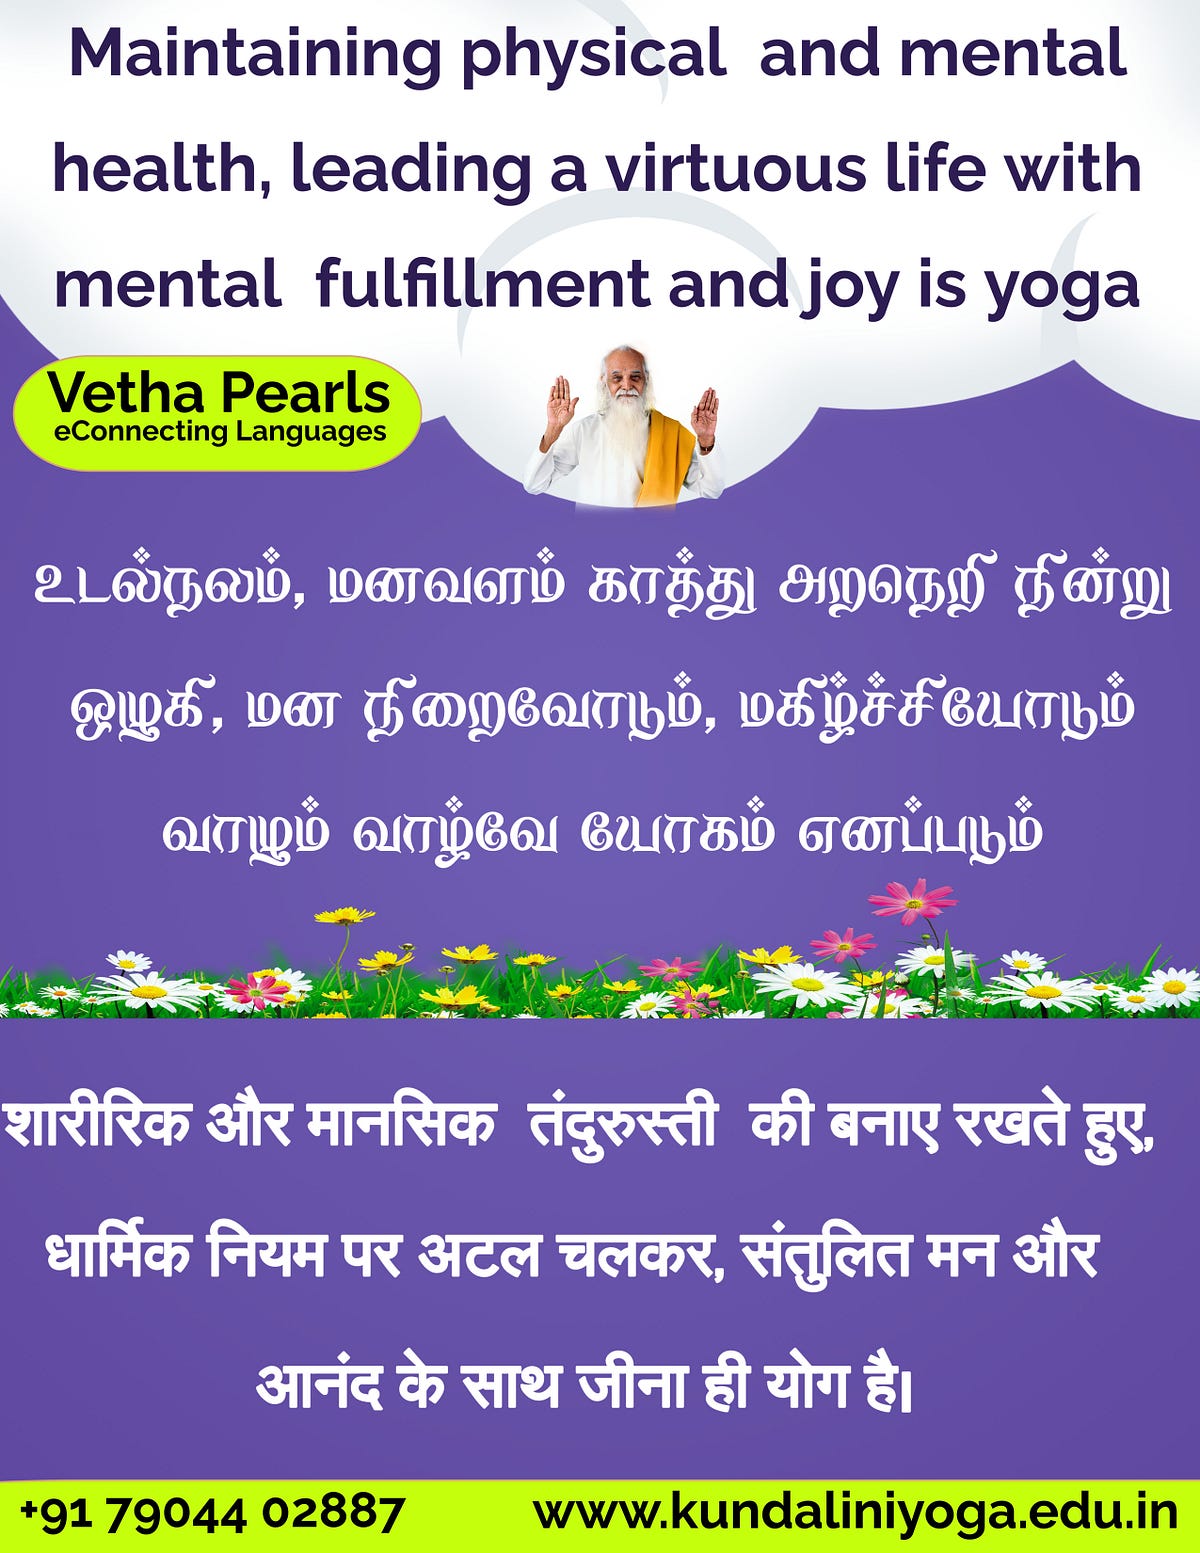 Vetha Pearls - Vethathiri Kundalini Yoga - Medium